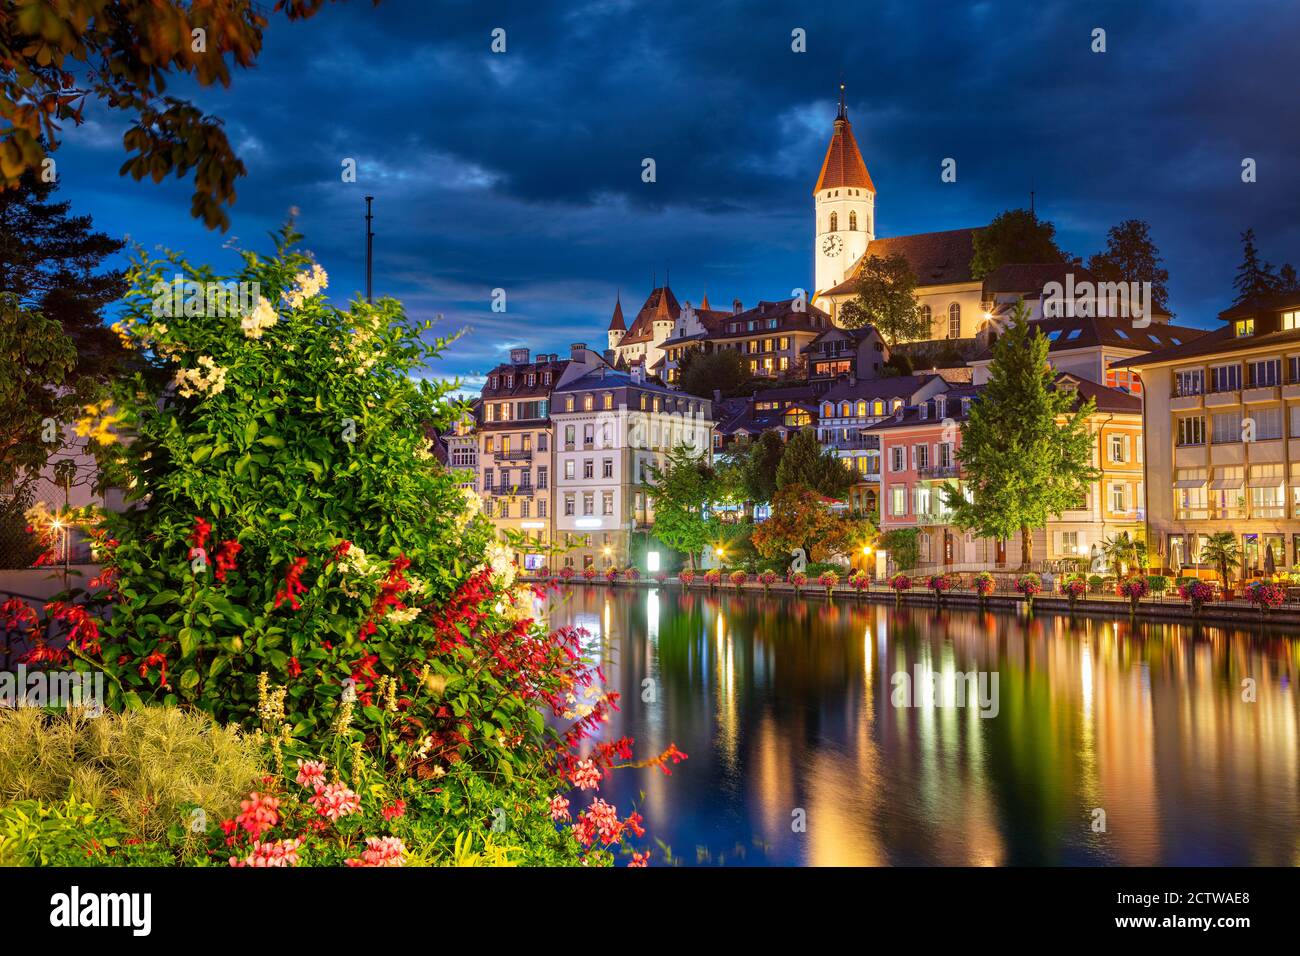 Thun, Suisse. Image de paysage urbain de la belle ville de Thun avec le reflet de la ville dans la rivière Aare la nuit. Banque D'Images